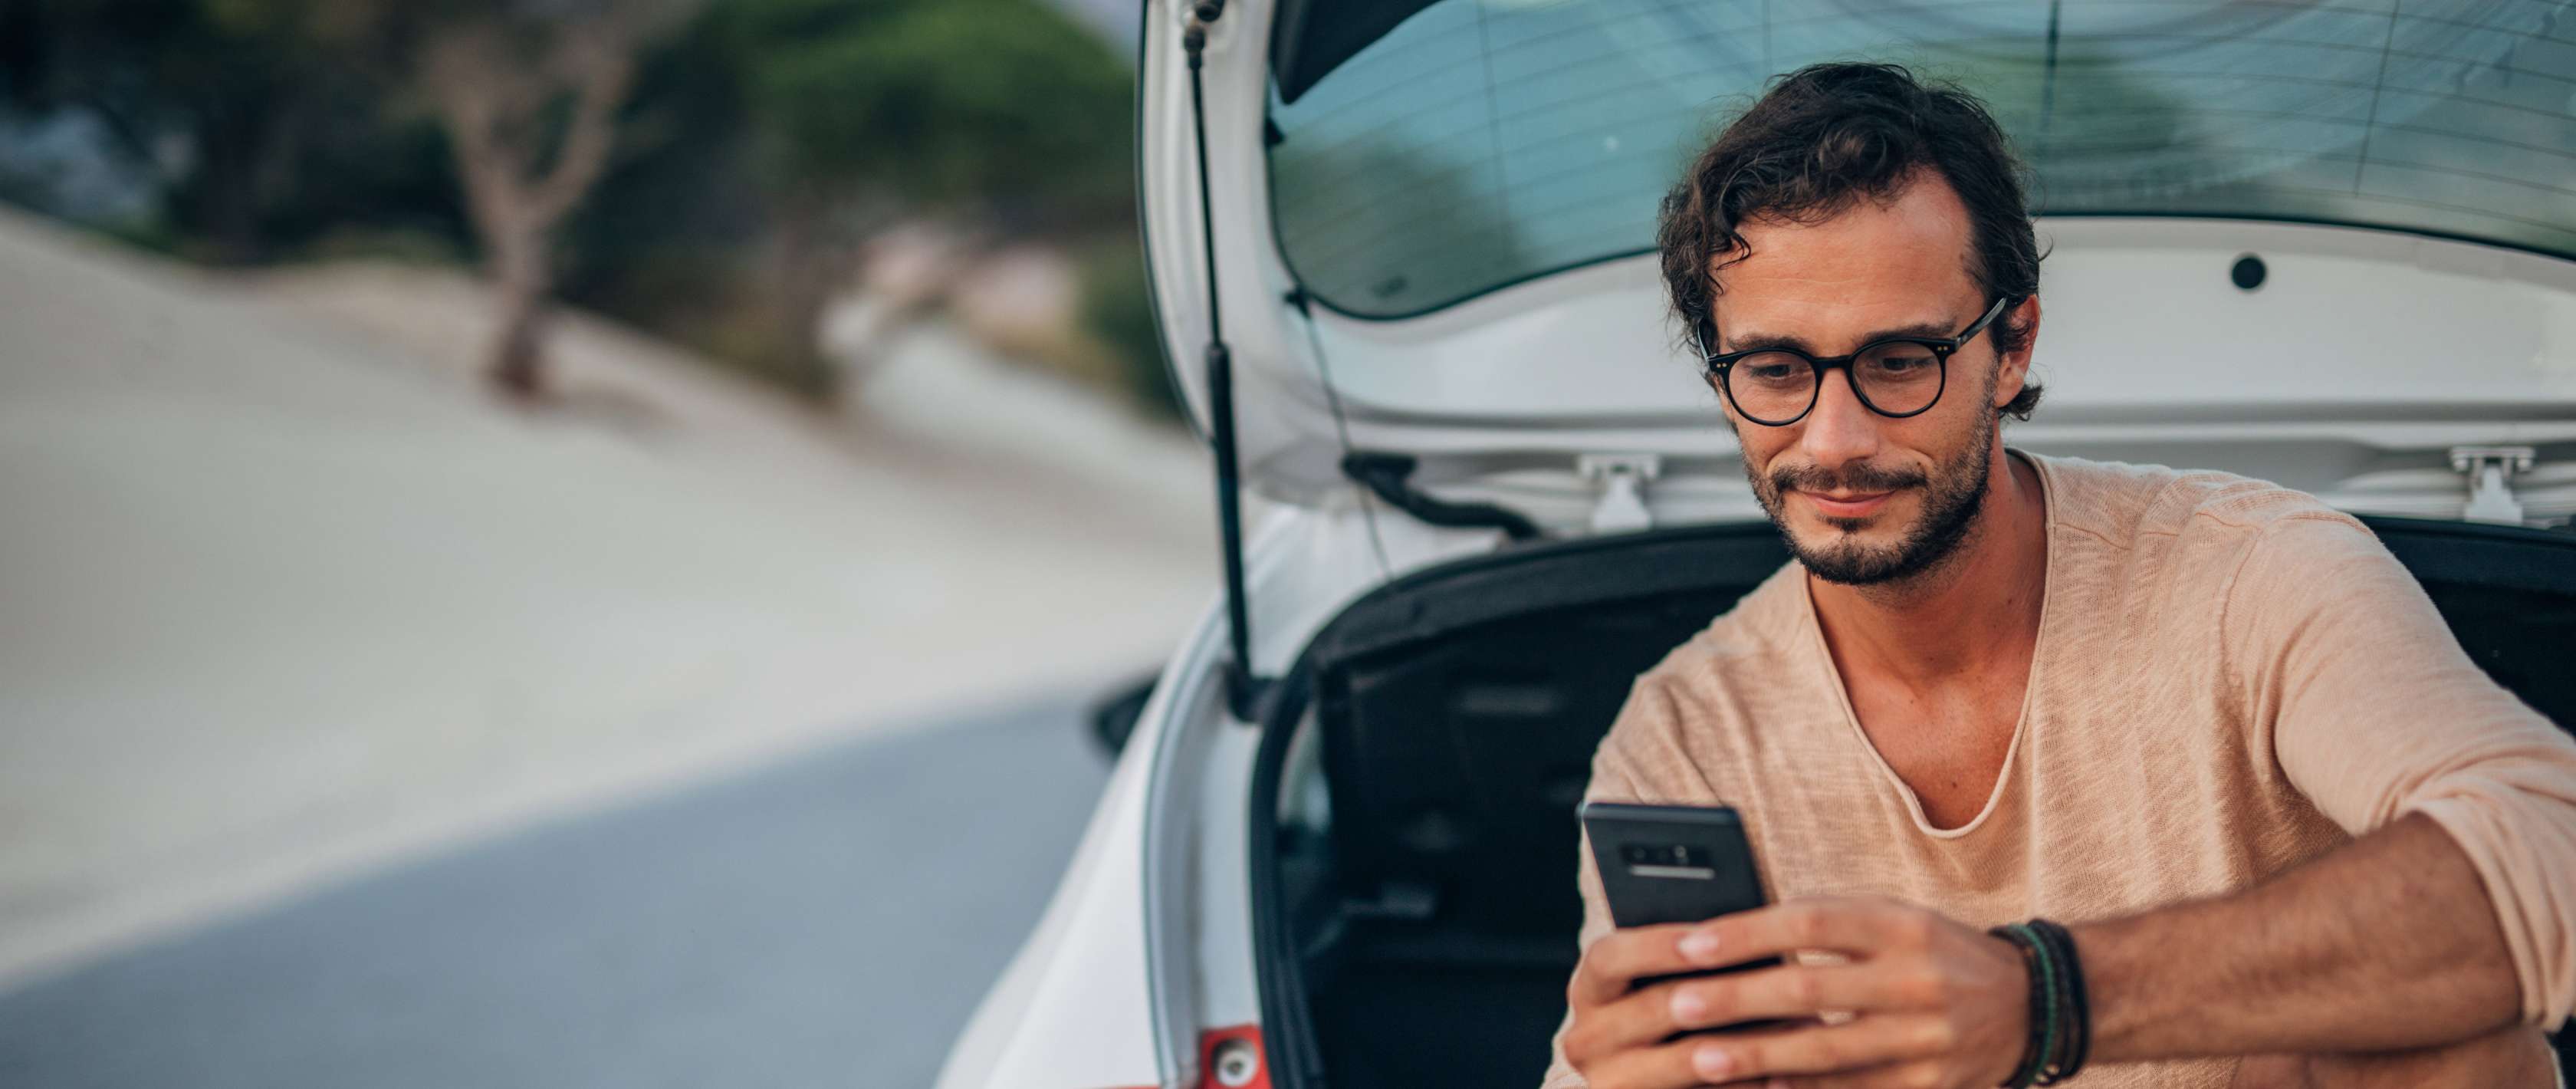 Einstufung Kfz-Versicherung: Mann sitzt in Kofferaum eines Pkw und blickt auf Smartphone